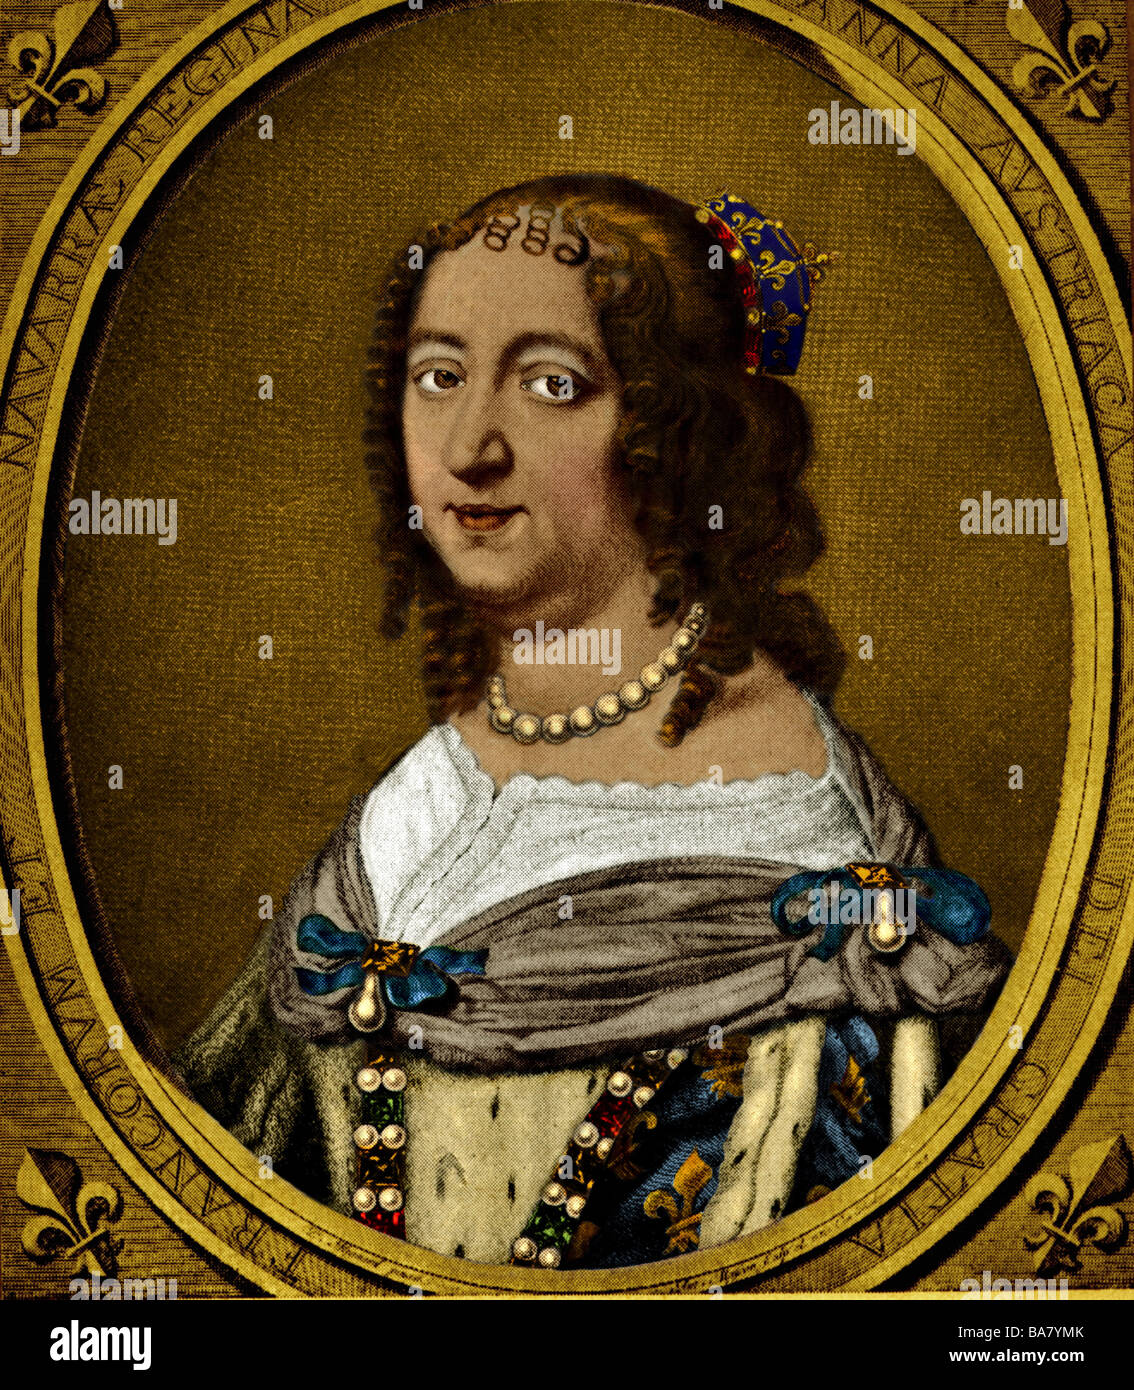 Anne d'Autriche, 22.9.1601 - 20.1.1666, reine de France depuis 1615, épouse de Louis XIII, dans portrait ovale, gravure sur cuivre par Antoine Masson, colorés, 17e siècle, l'artiste n'a pas d'auteur pour être effacé Banque D'Images